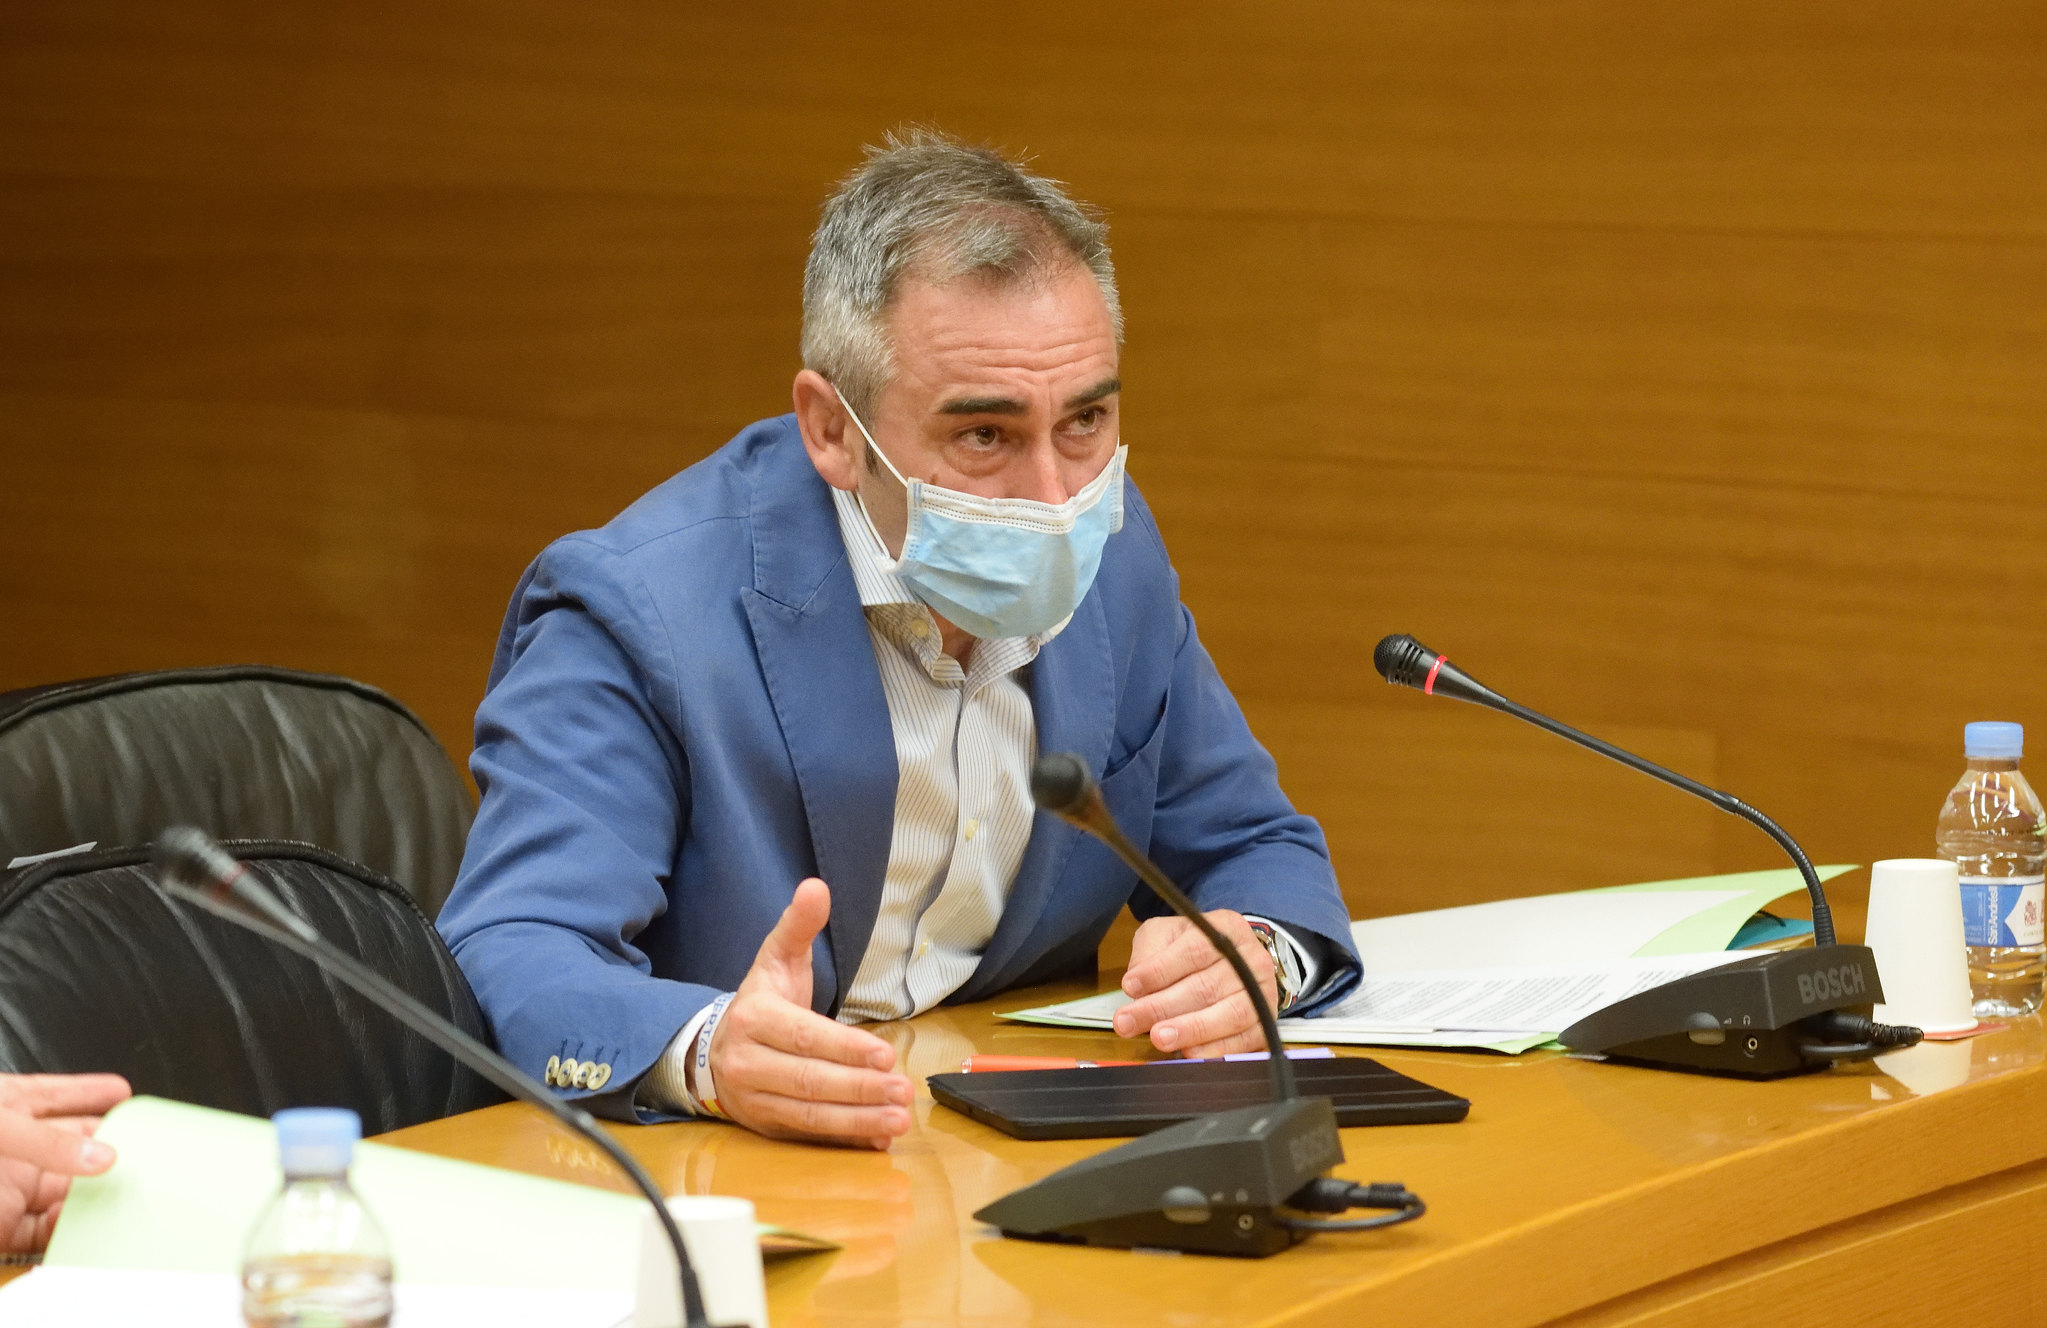 Barrachina: “Puig no puede dar la espalda a las informaciones sobre la supuesta financiación irregular del PSPV”